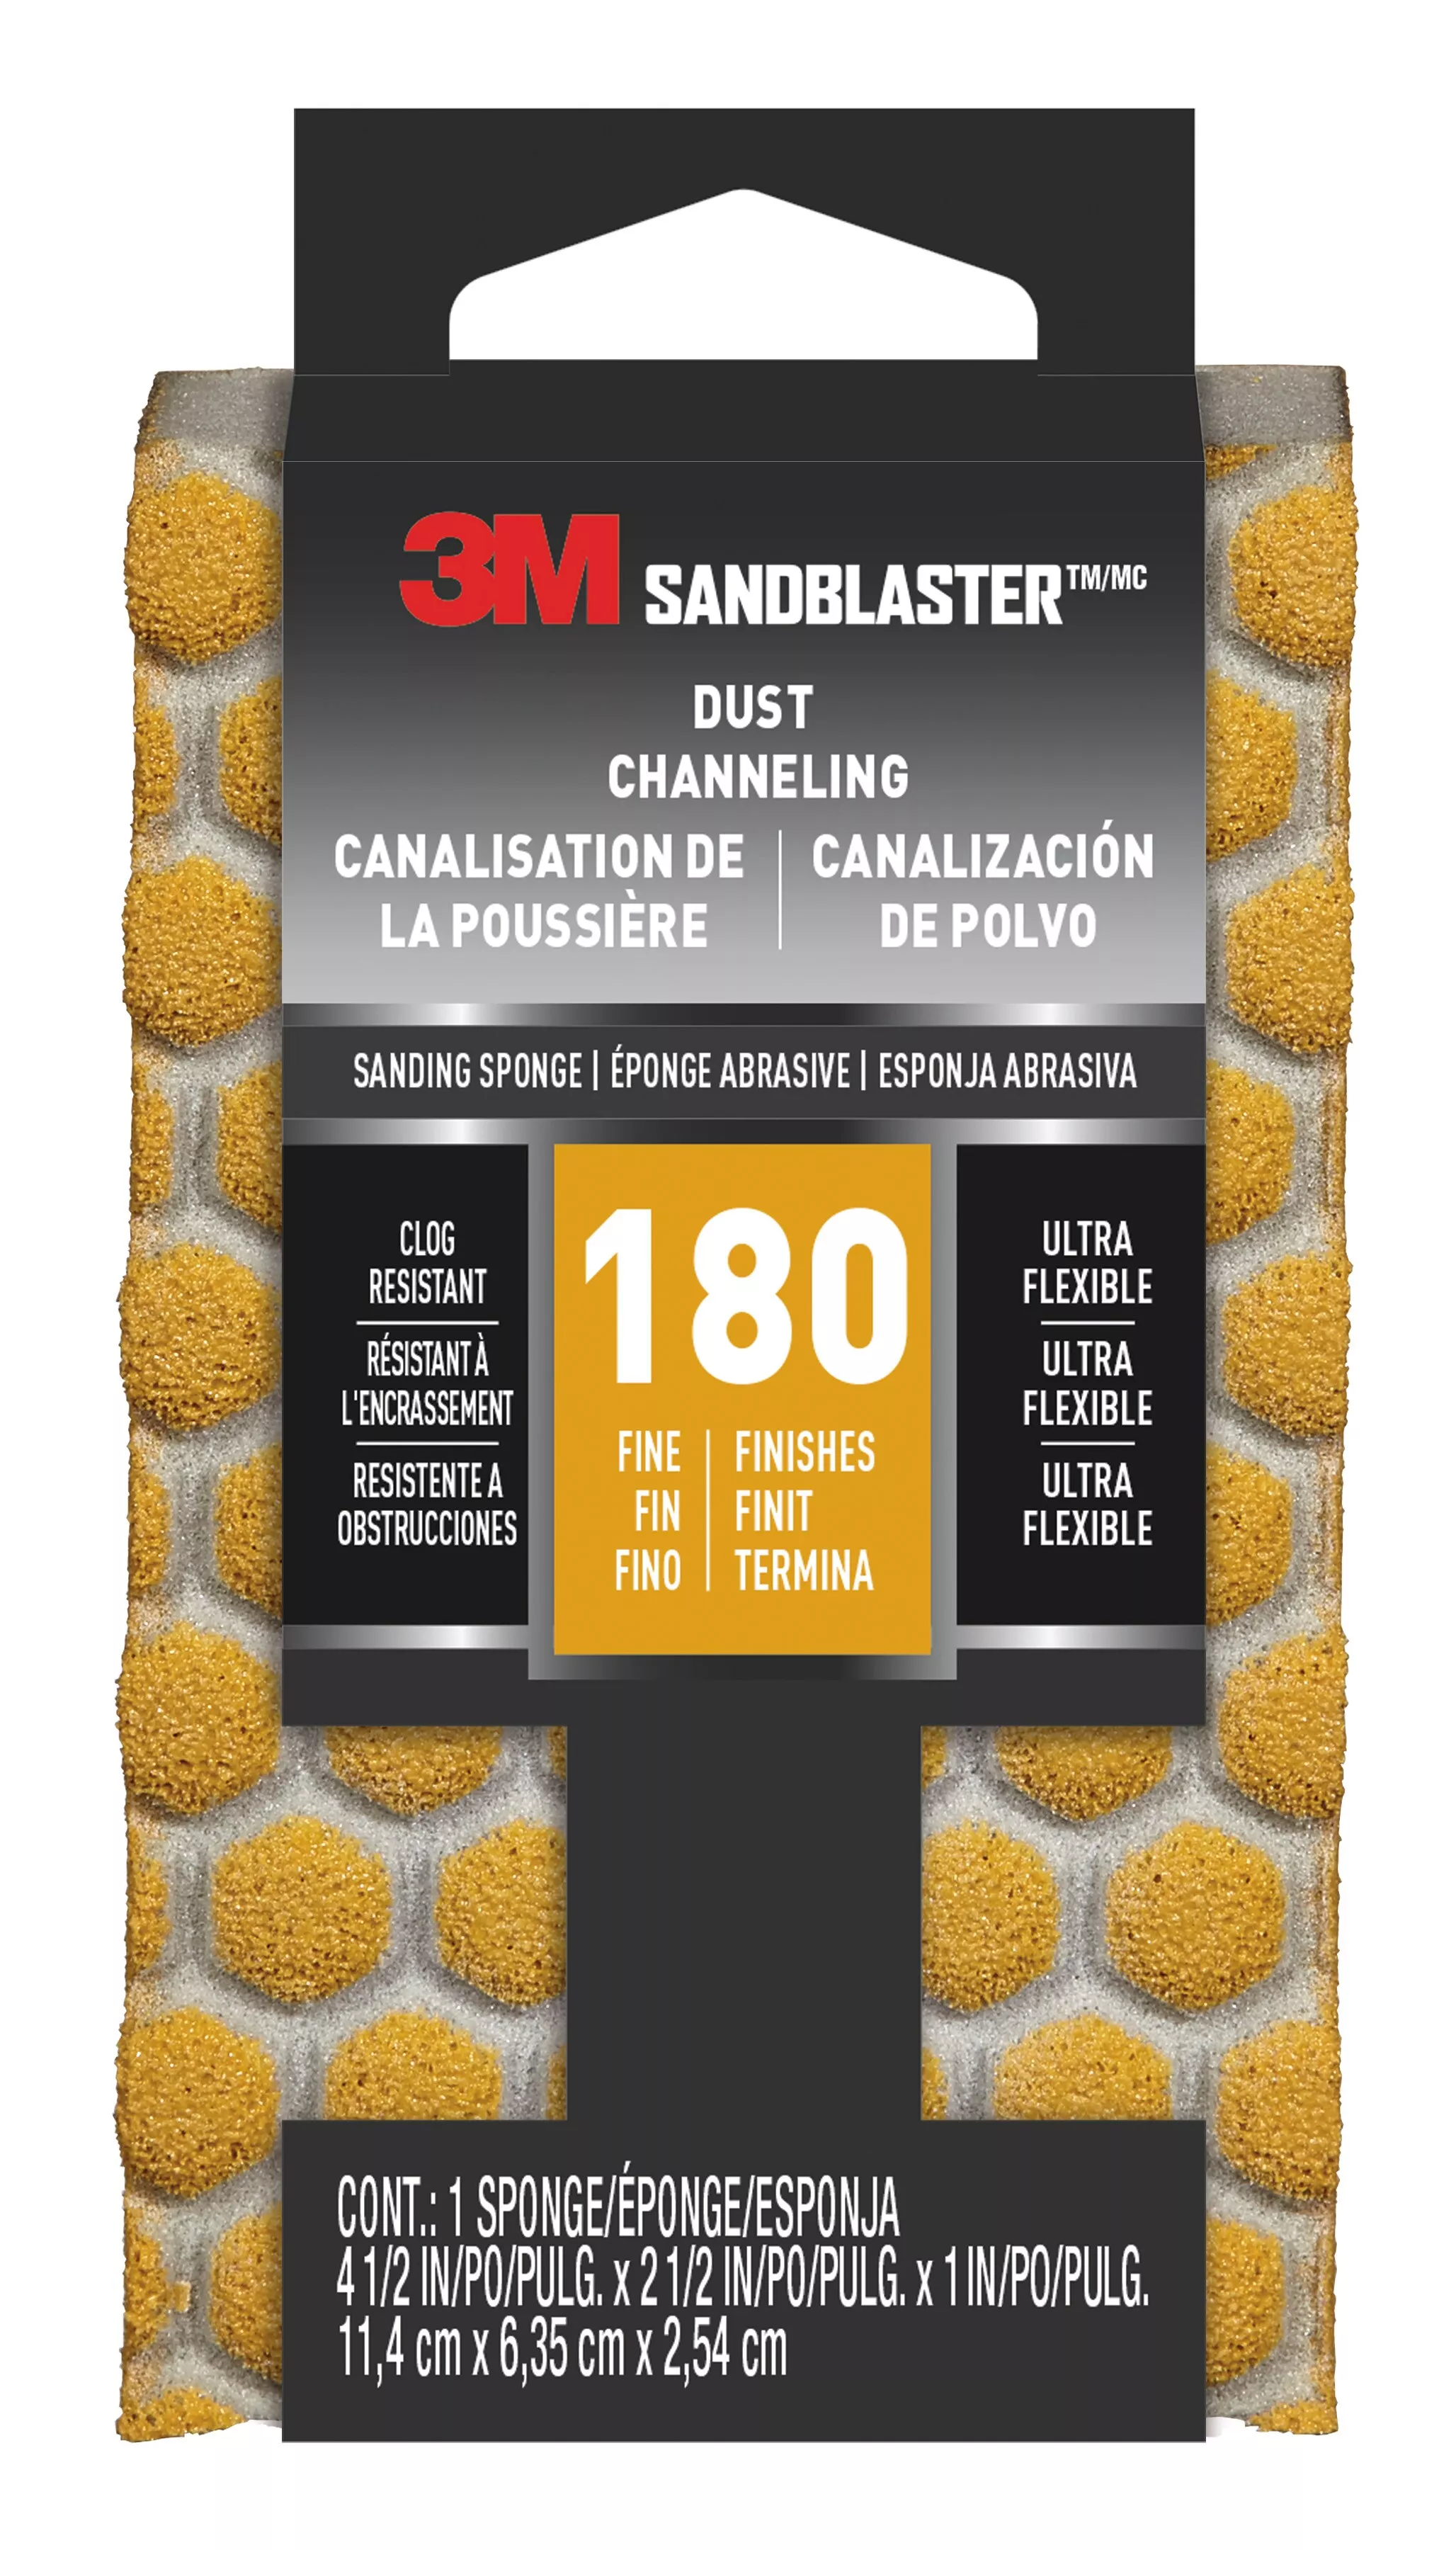 3M™ SandBlaster™ DUST CHANNELING Sanding Sponge, 20907-180-UFS ,180
grit, 4 1/2 in x 2 1/2 x 1 in, 1/pk